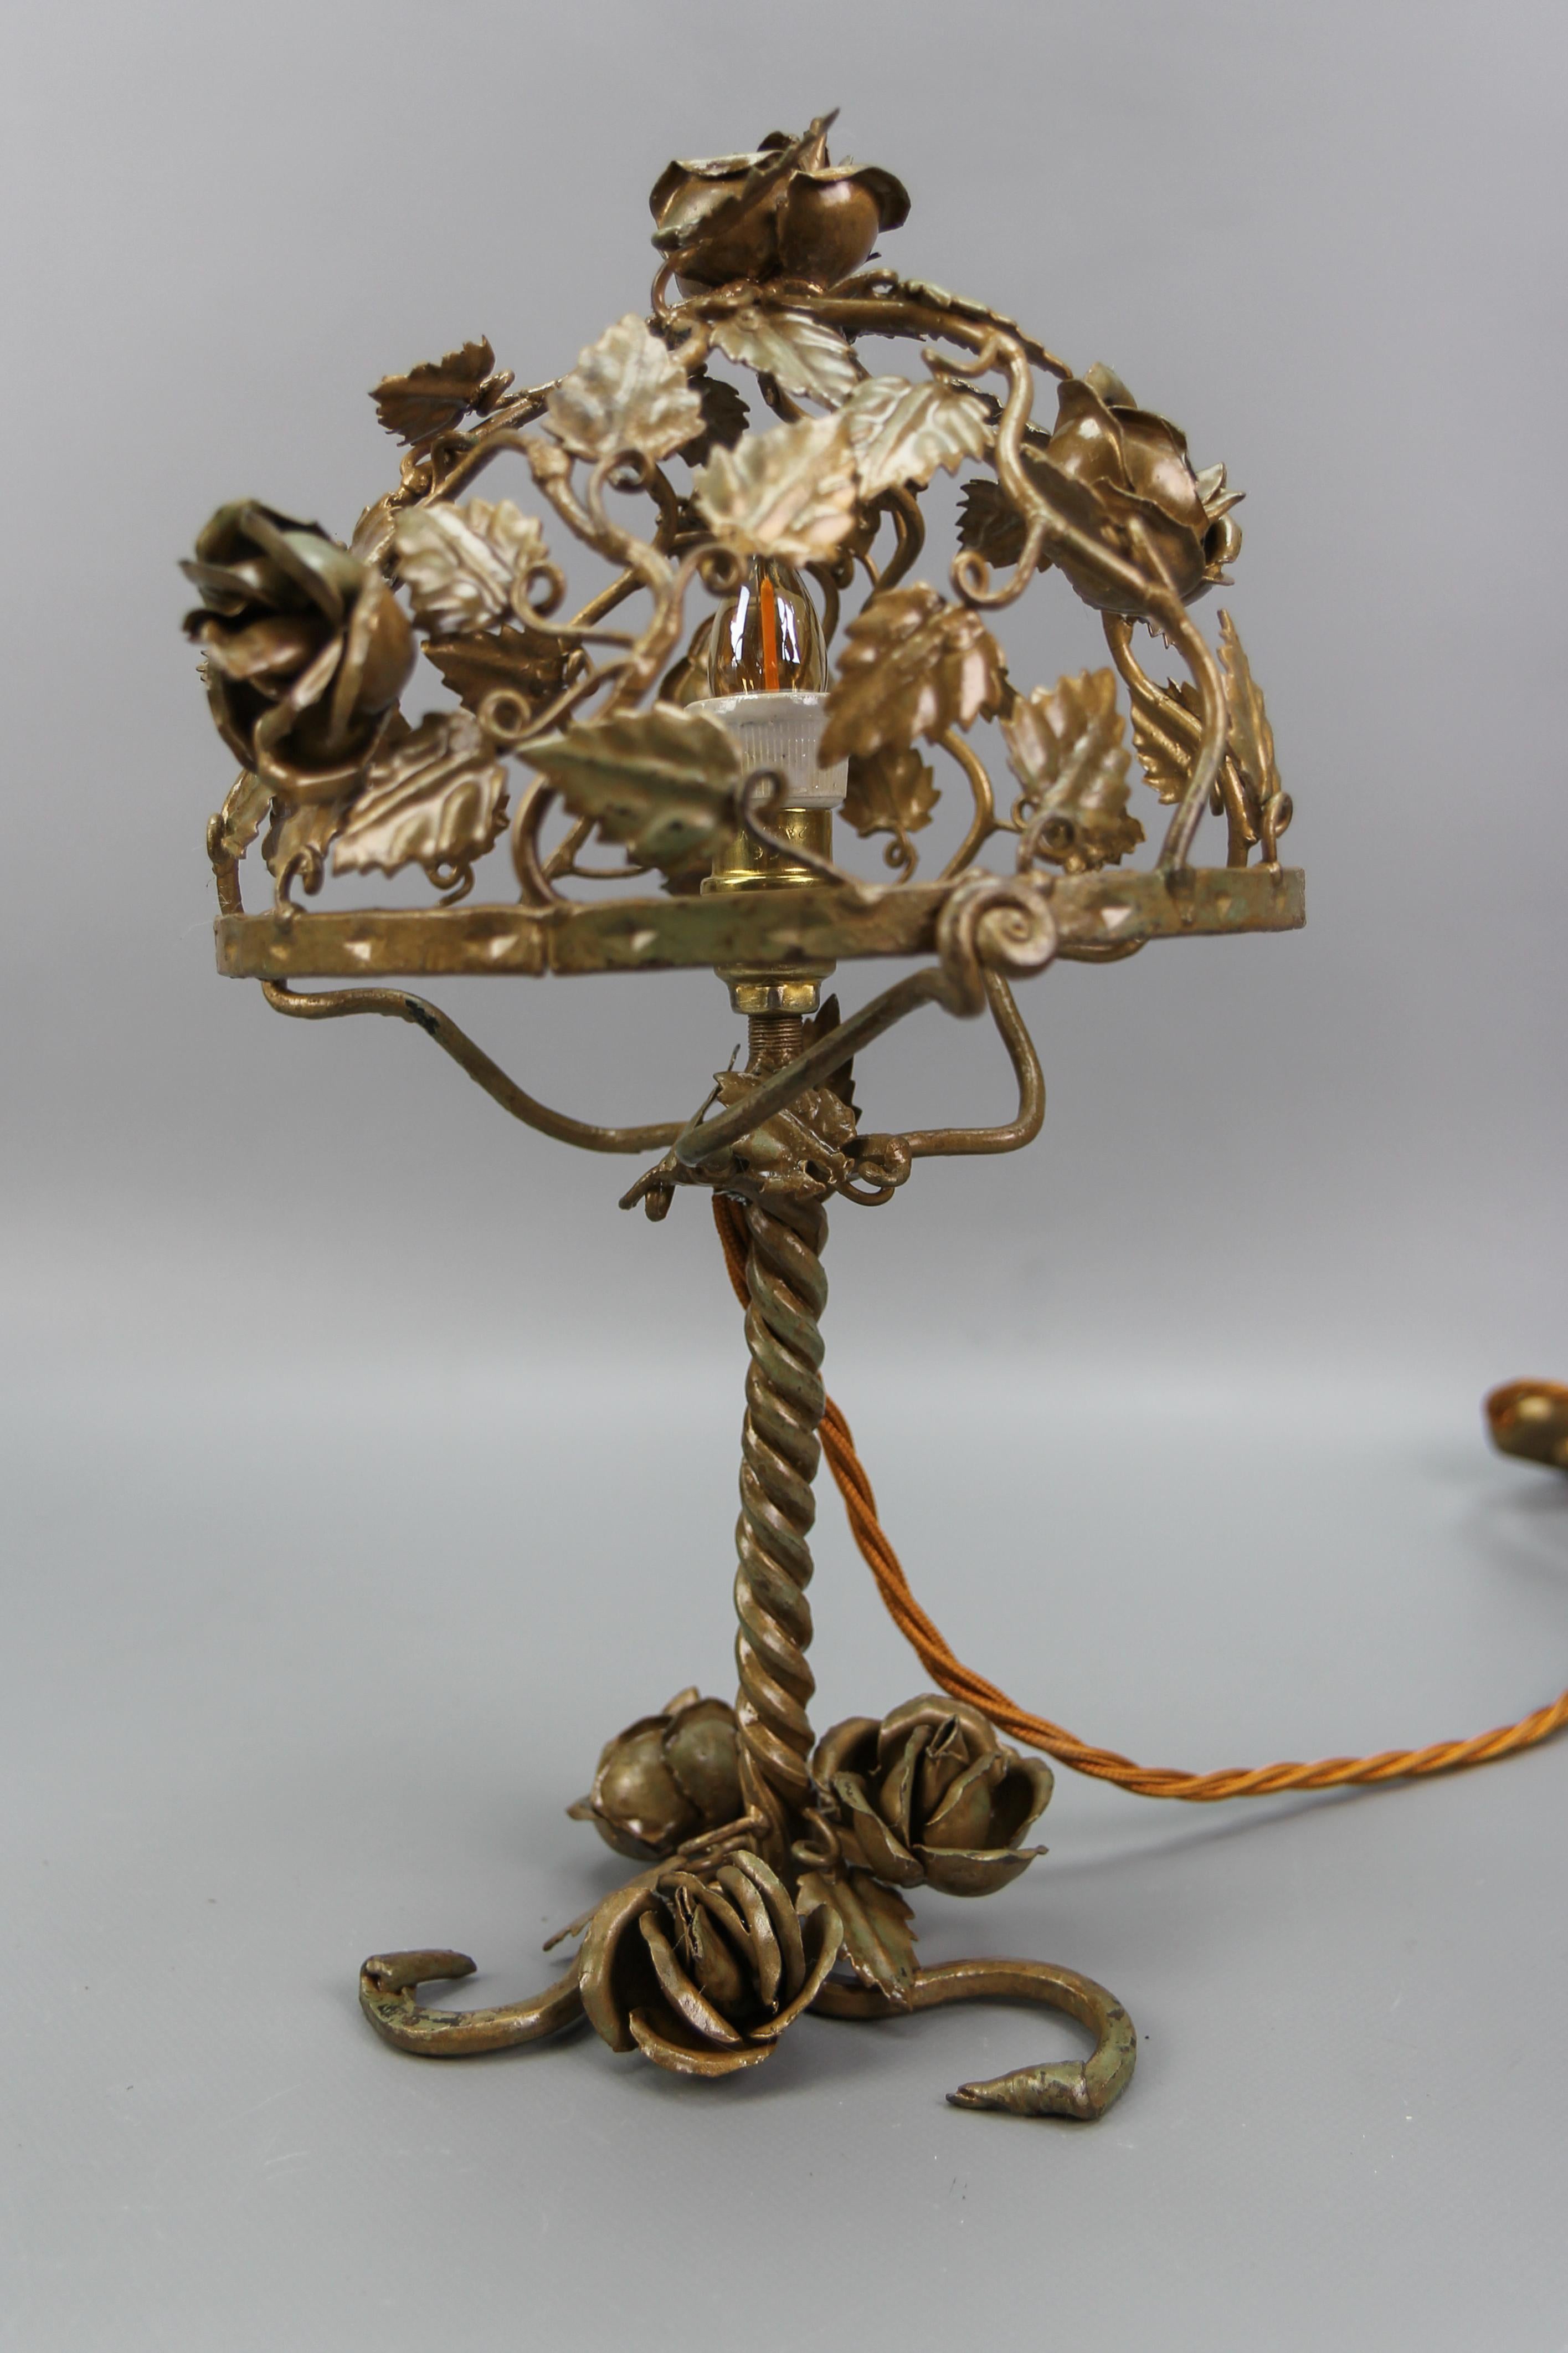 Cette belle et inhabituelle lampe de table en métal doré présente un corps en métal décoré de roses et de feuilles.
Une nouvelle douille pour une ampoule de taille E14.
Dimensions : hauteur : 31 cm / 12.2 in ; diamètre : 21 cm / 8.26 in.
En bon état